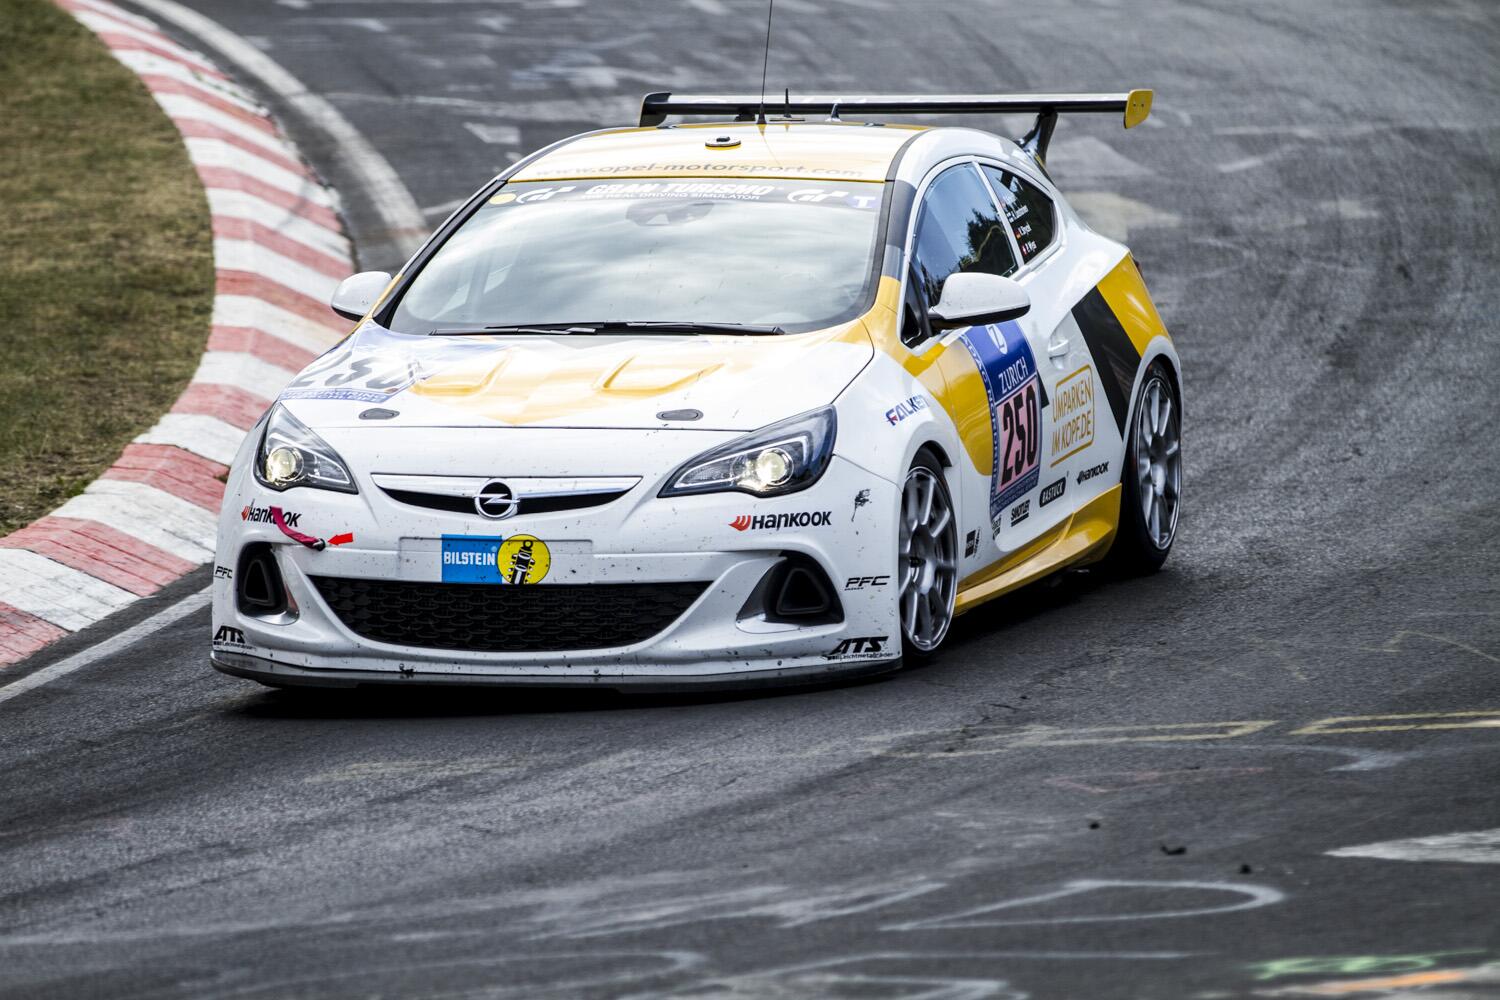 Astra j GTC “Opel Motorsport”